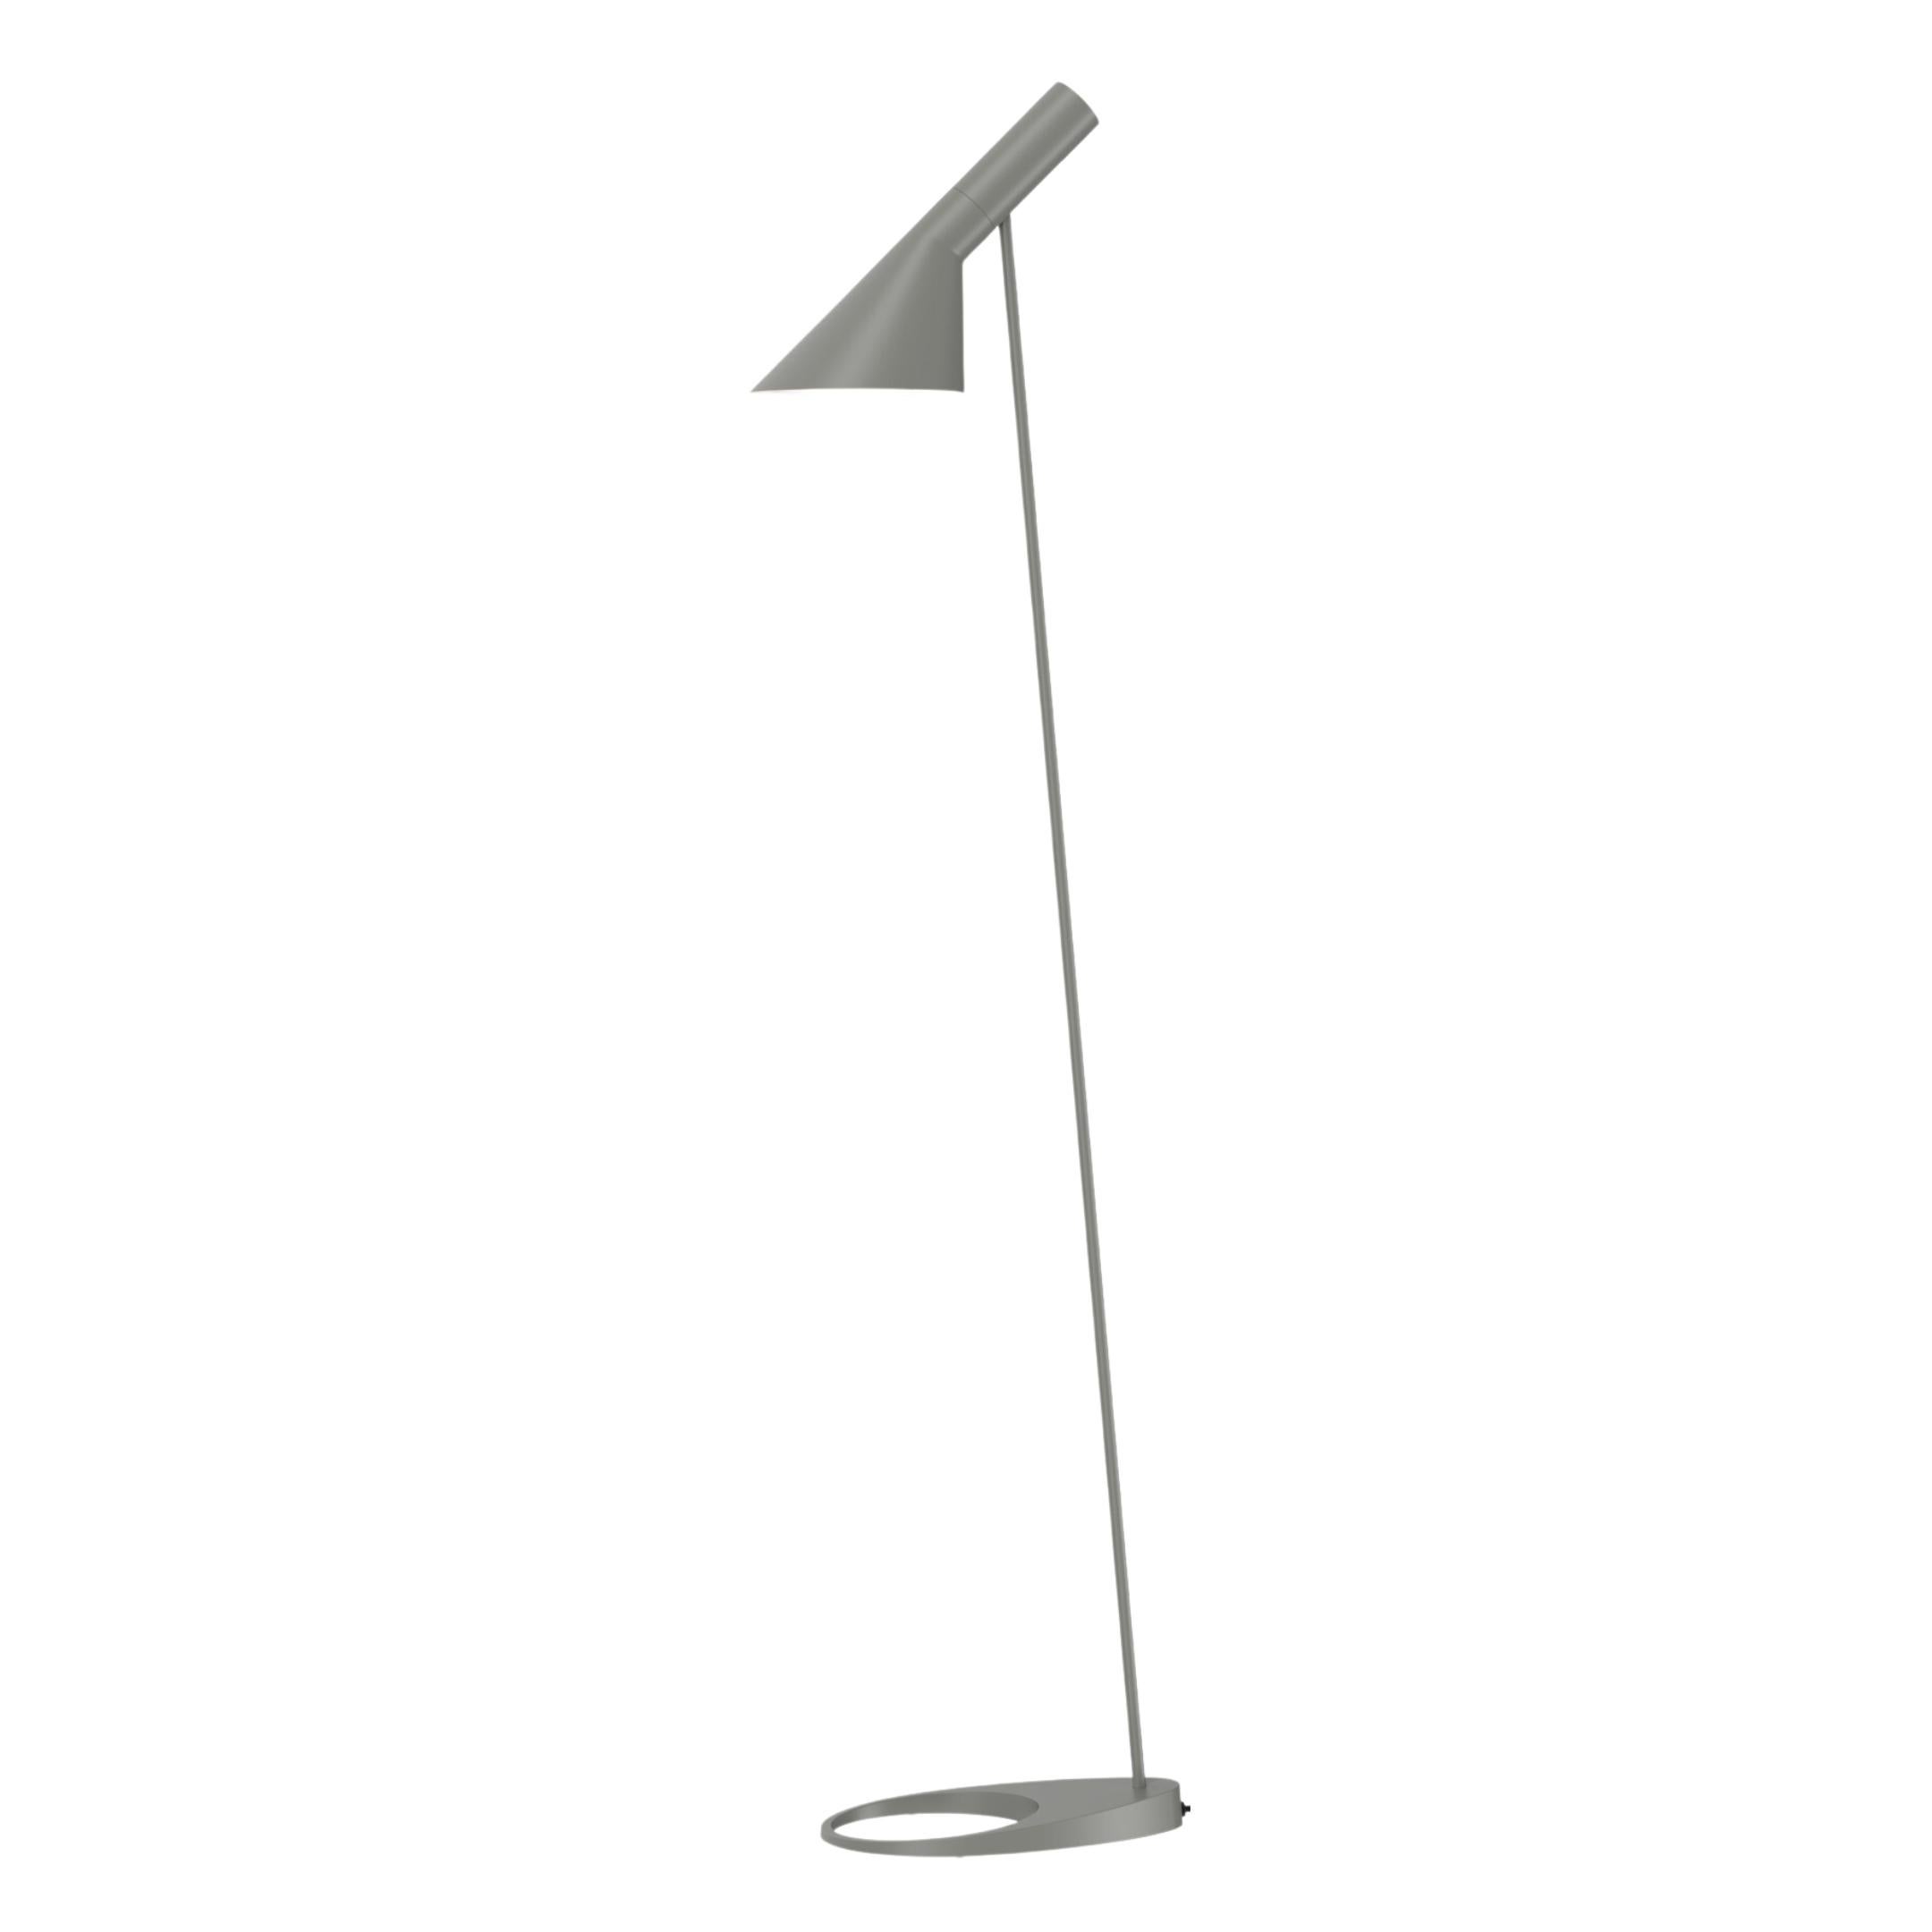 Arne Jacobsen AJ Floor Lamp in Soft Lemon for Louis Poulsen For Sale 3